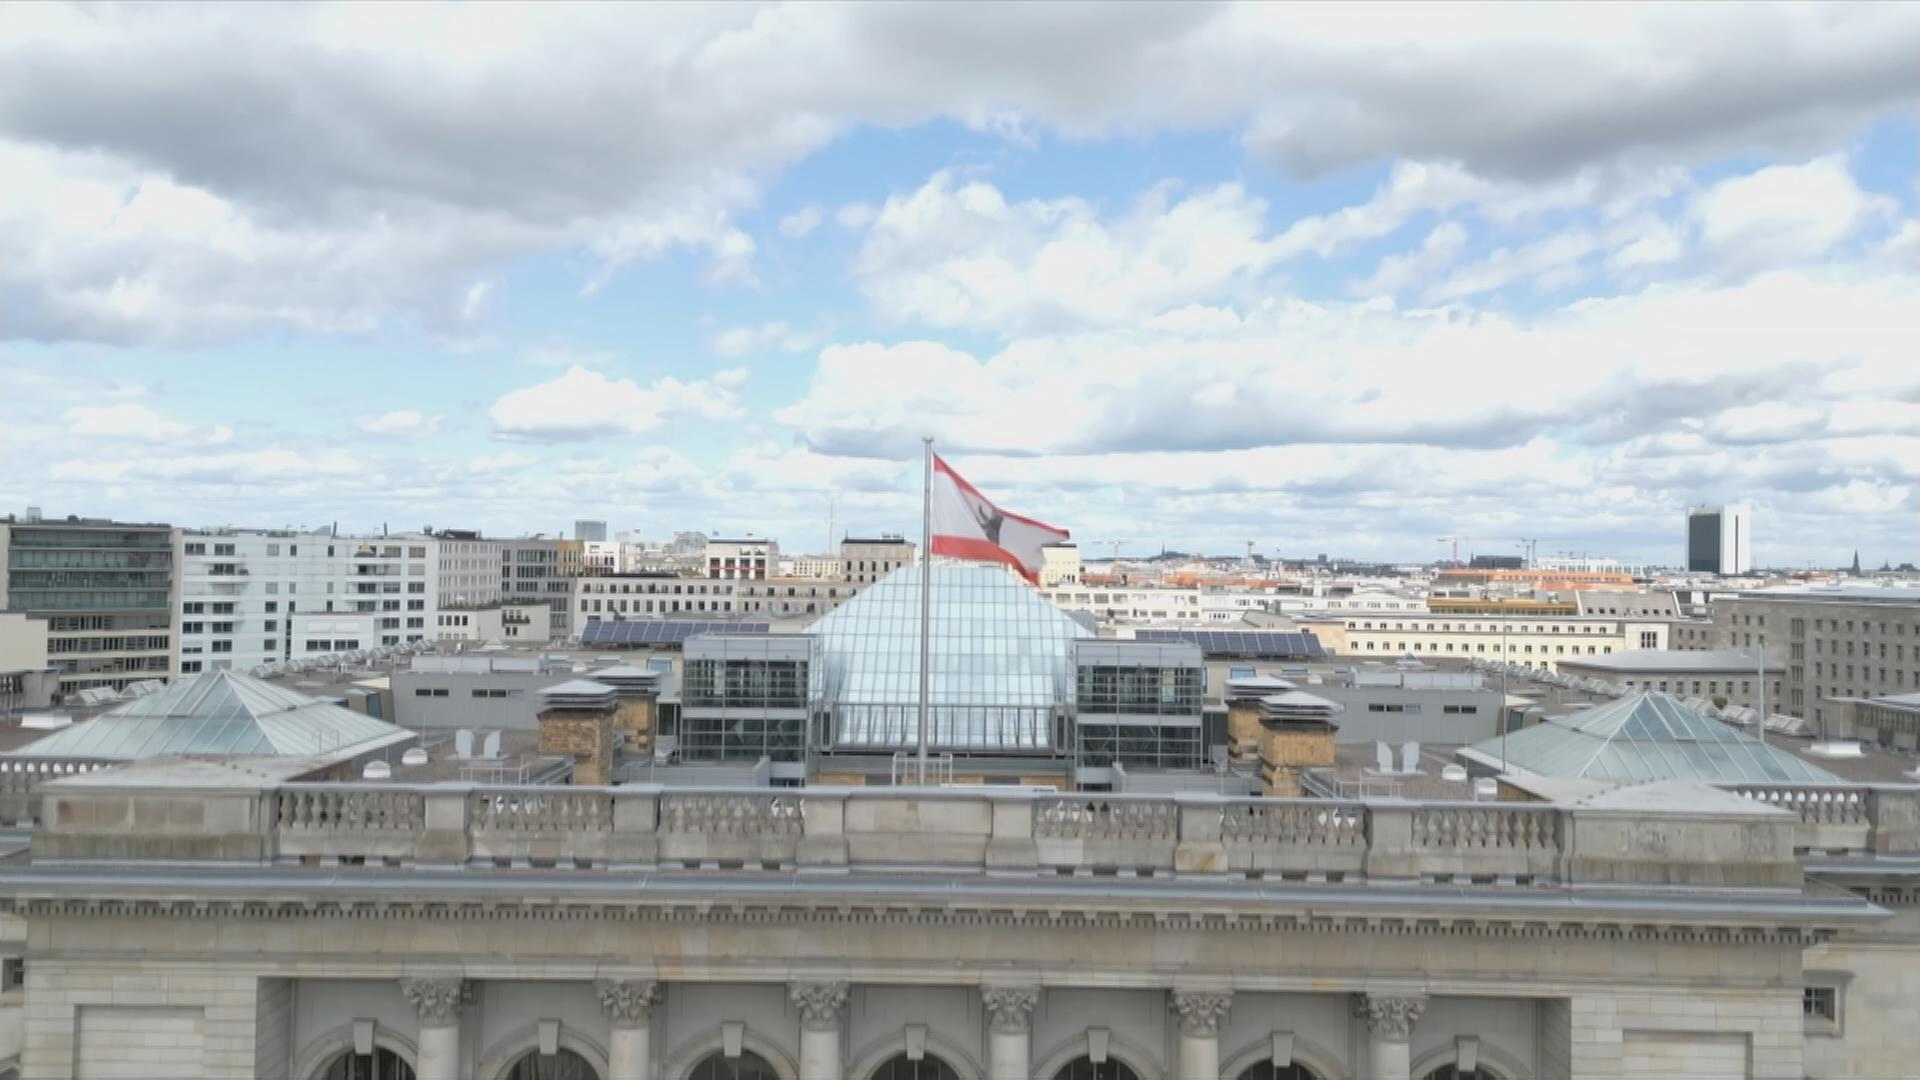 Auf dem Bild ist eine Luftansicht des Rathauses Berlin zu sehen.